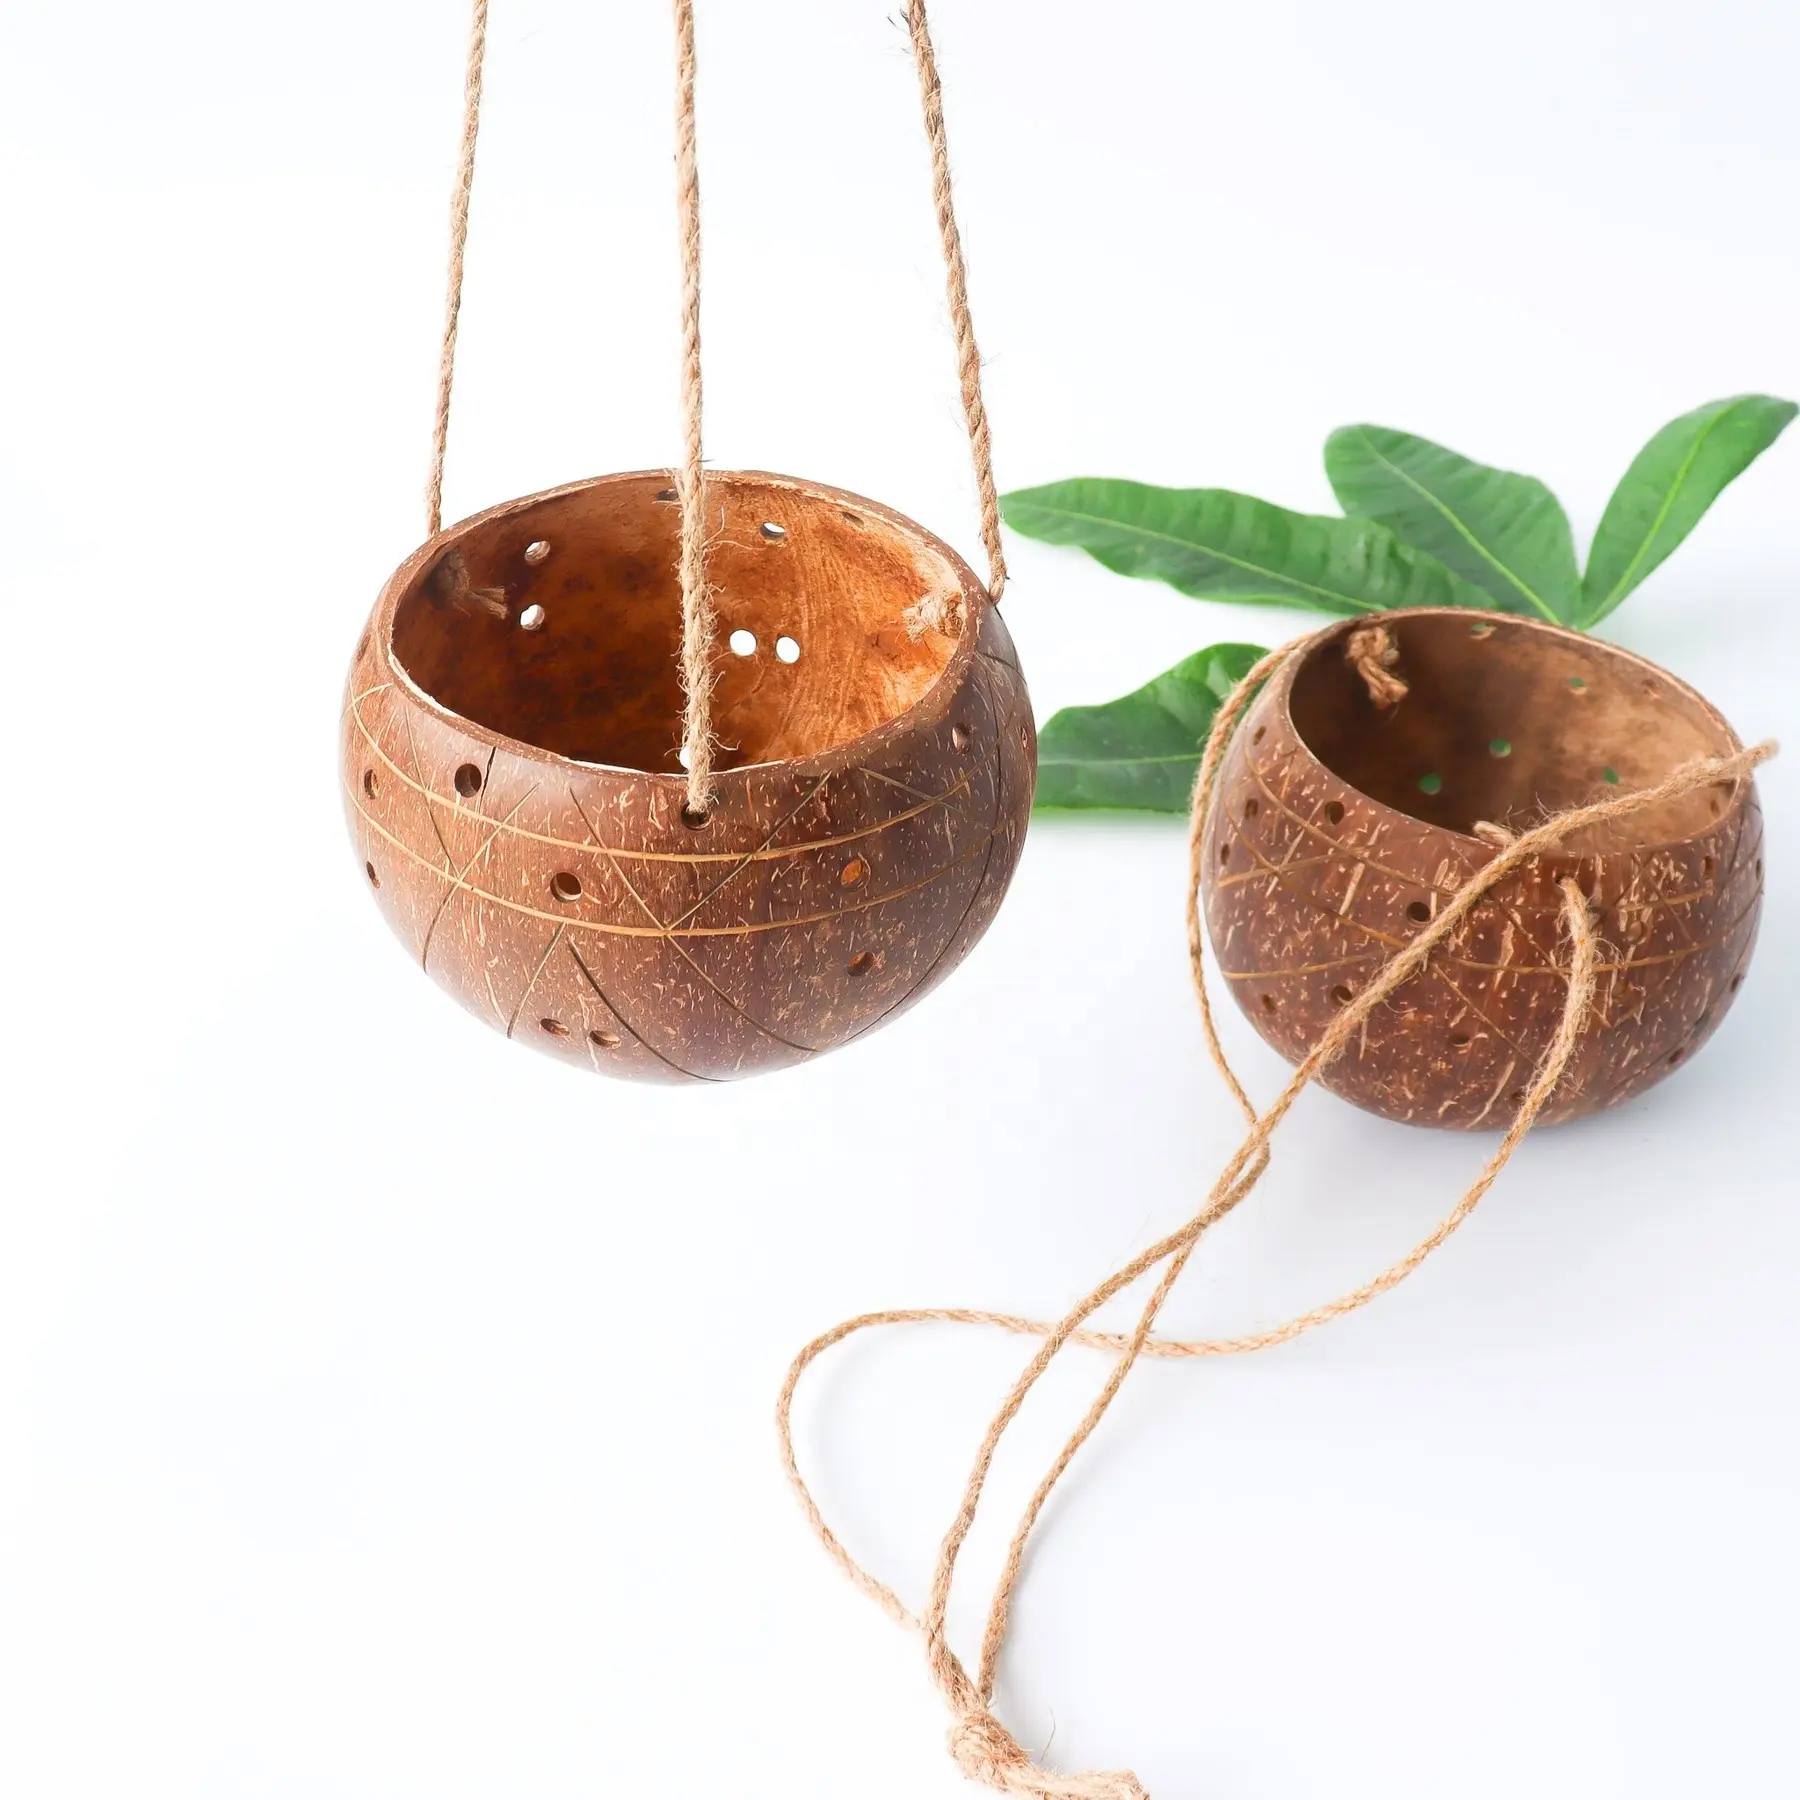 Hoge Kwaliteit Natuurlijke Kokosnoot Opknoping Planter Pot Handgemaakte Indoor Planten Potten Bloempotten En Plantenbakken In Viet Na